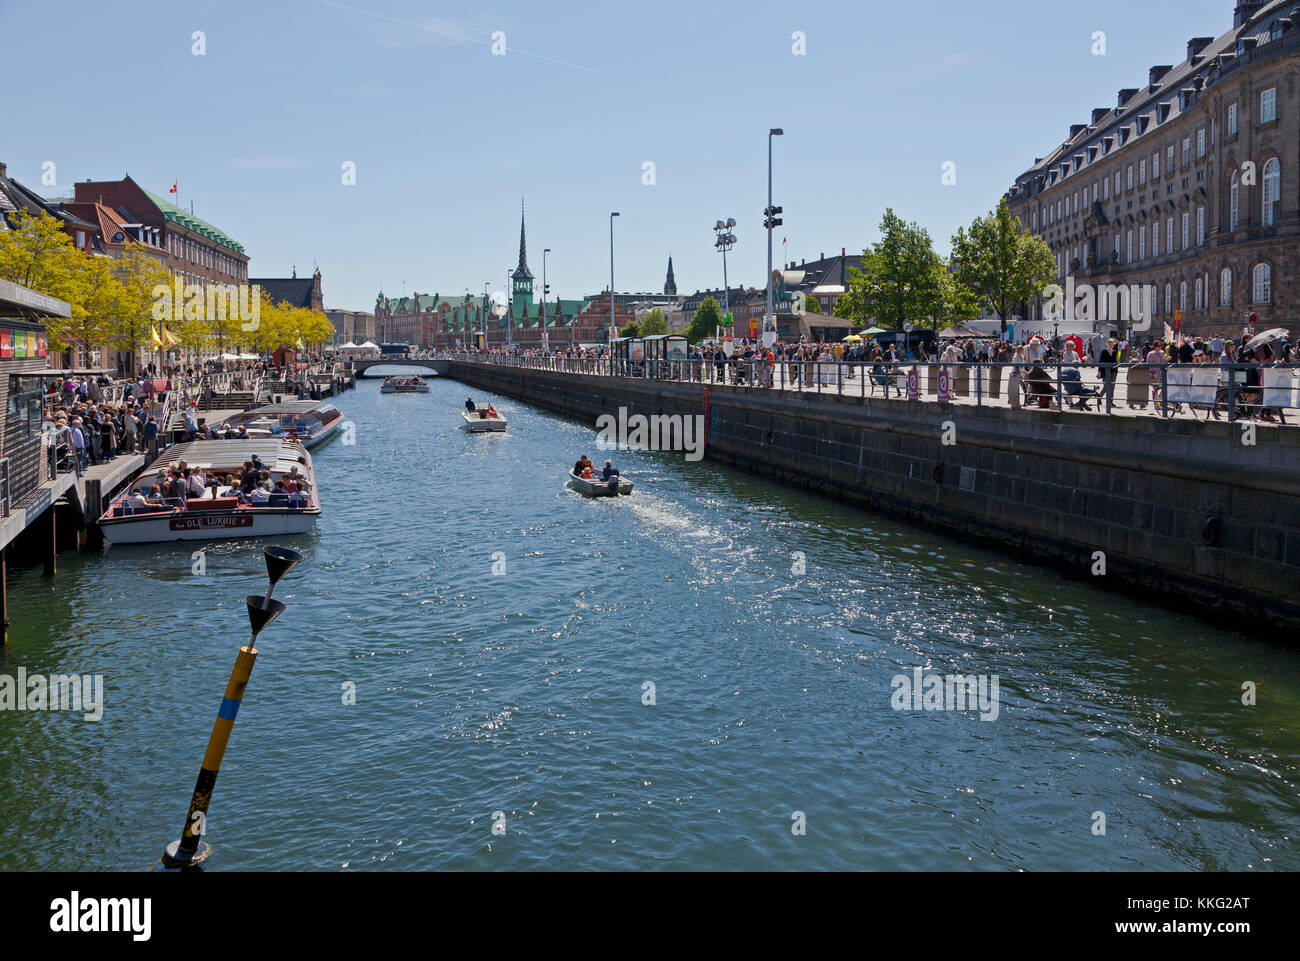 Blick entlang Slotsholmskanal in Kopenhagen. Dänemark. Einer der Kanäle um den Bereich der Schloss Christiansborg und das Folketing. Siehe Beschreibung. Stockfoto